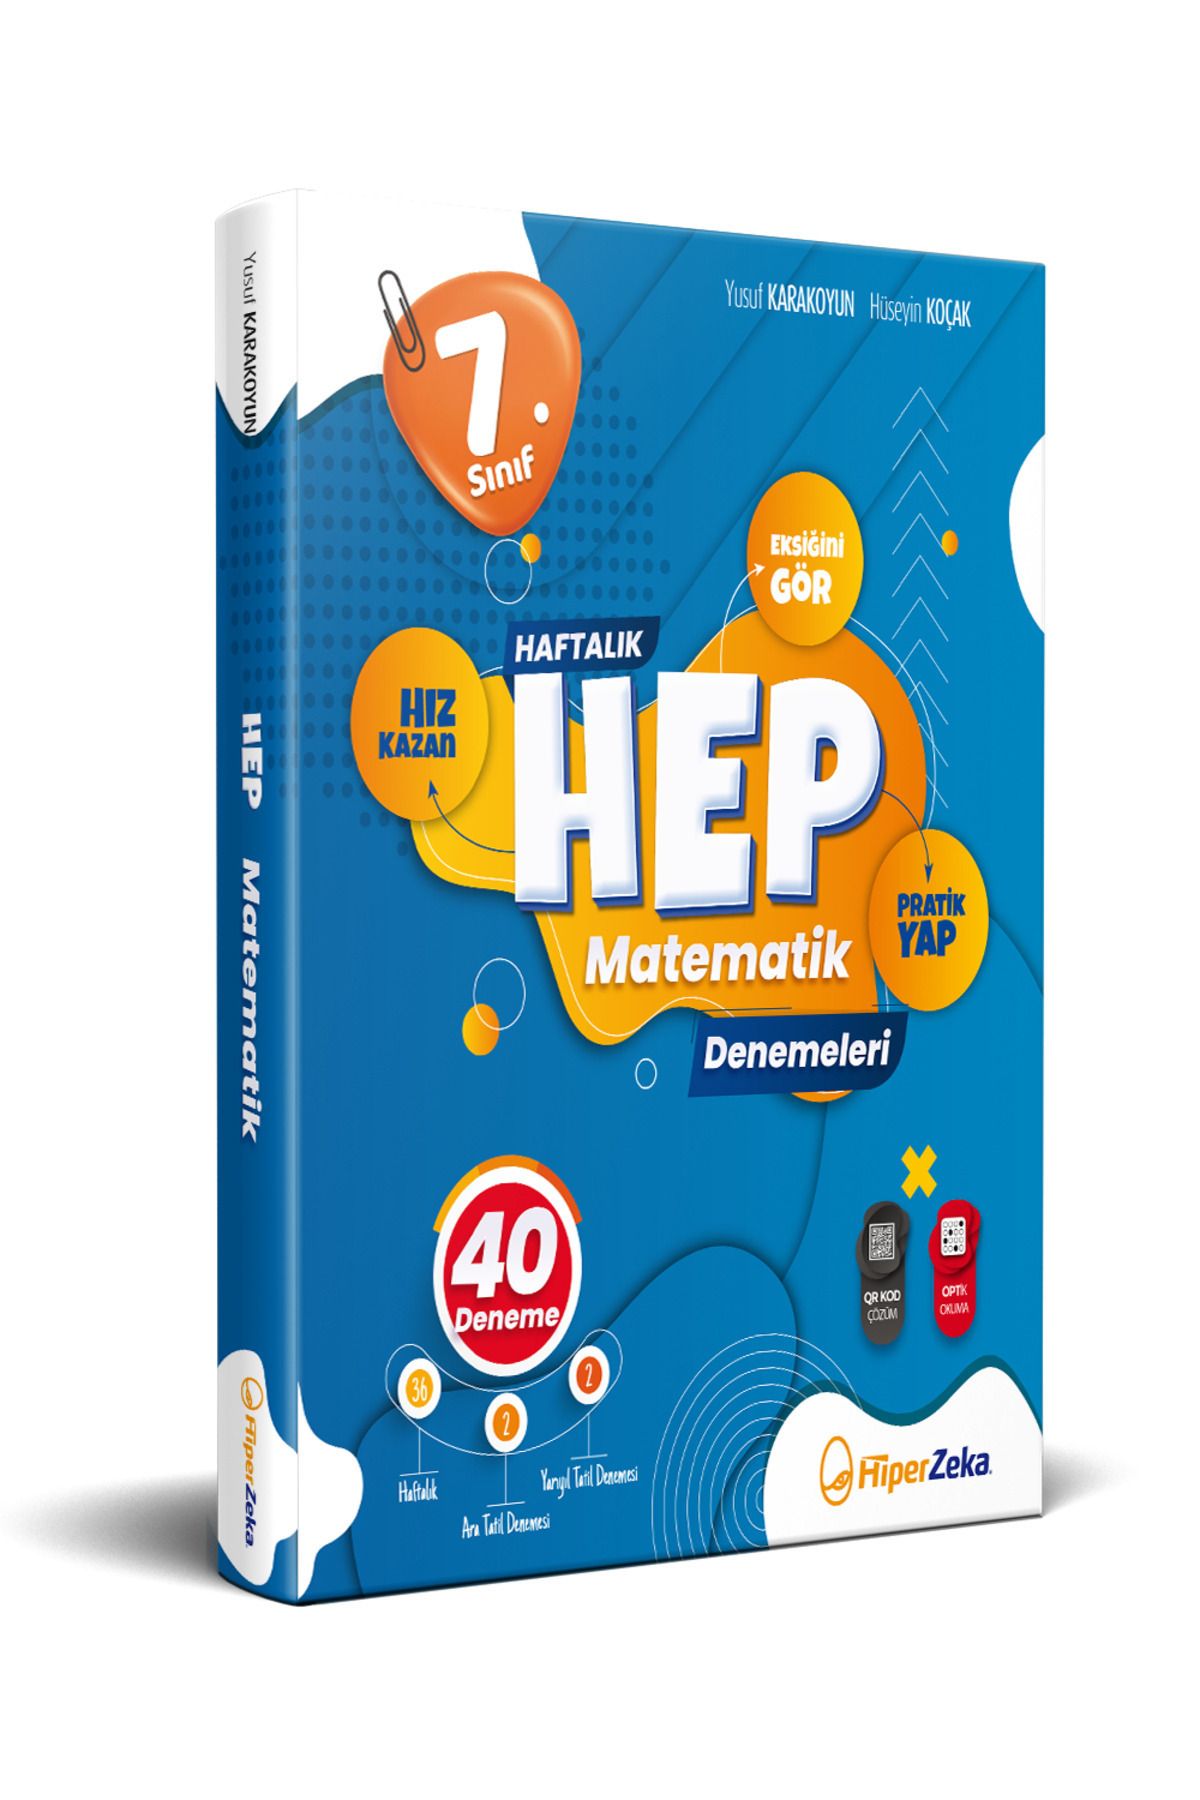 Hiper Zeka Yayınları 7. Sınıf Haftalık HEP Matematik 40 Deneme | Yusuf KARAKOYUN, Hüseyin KOÇAK